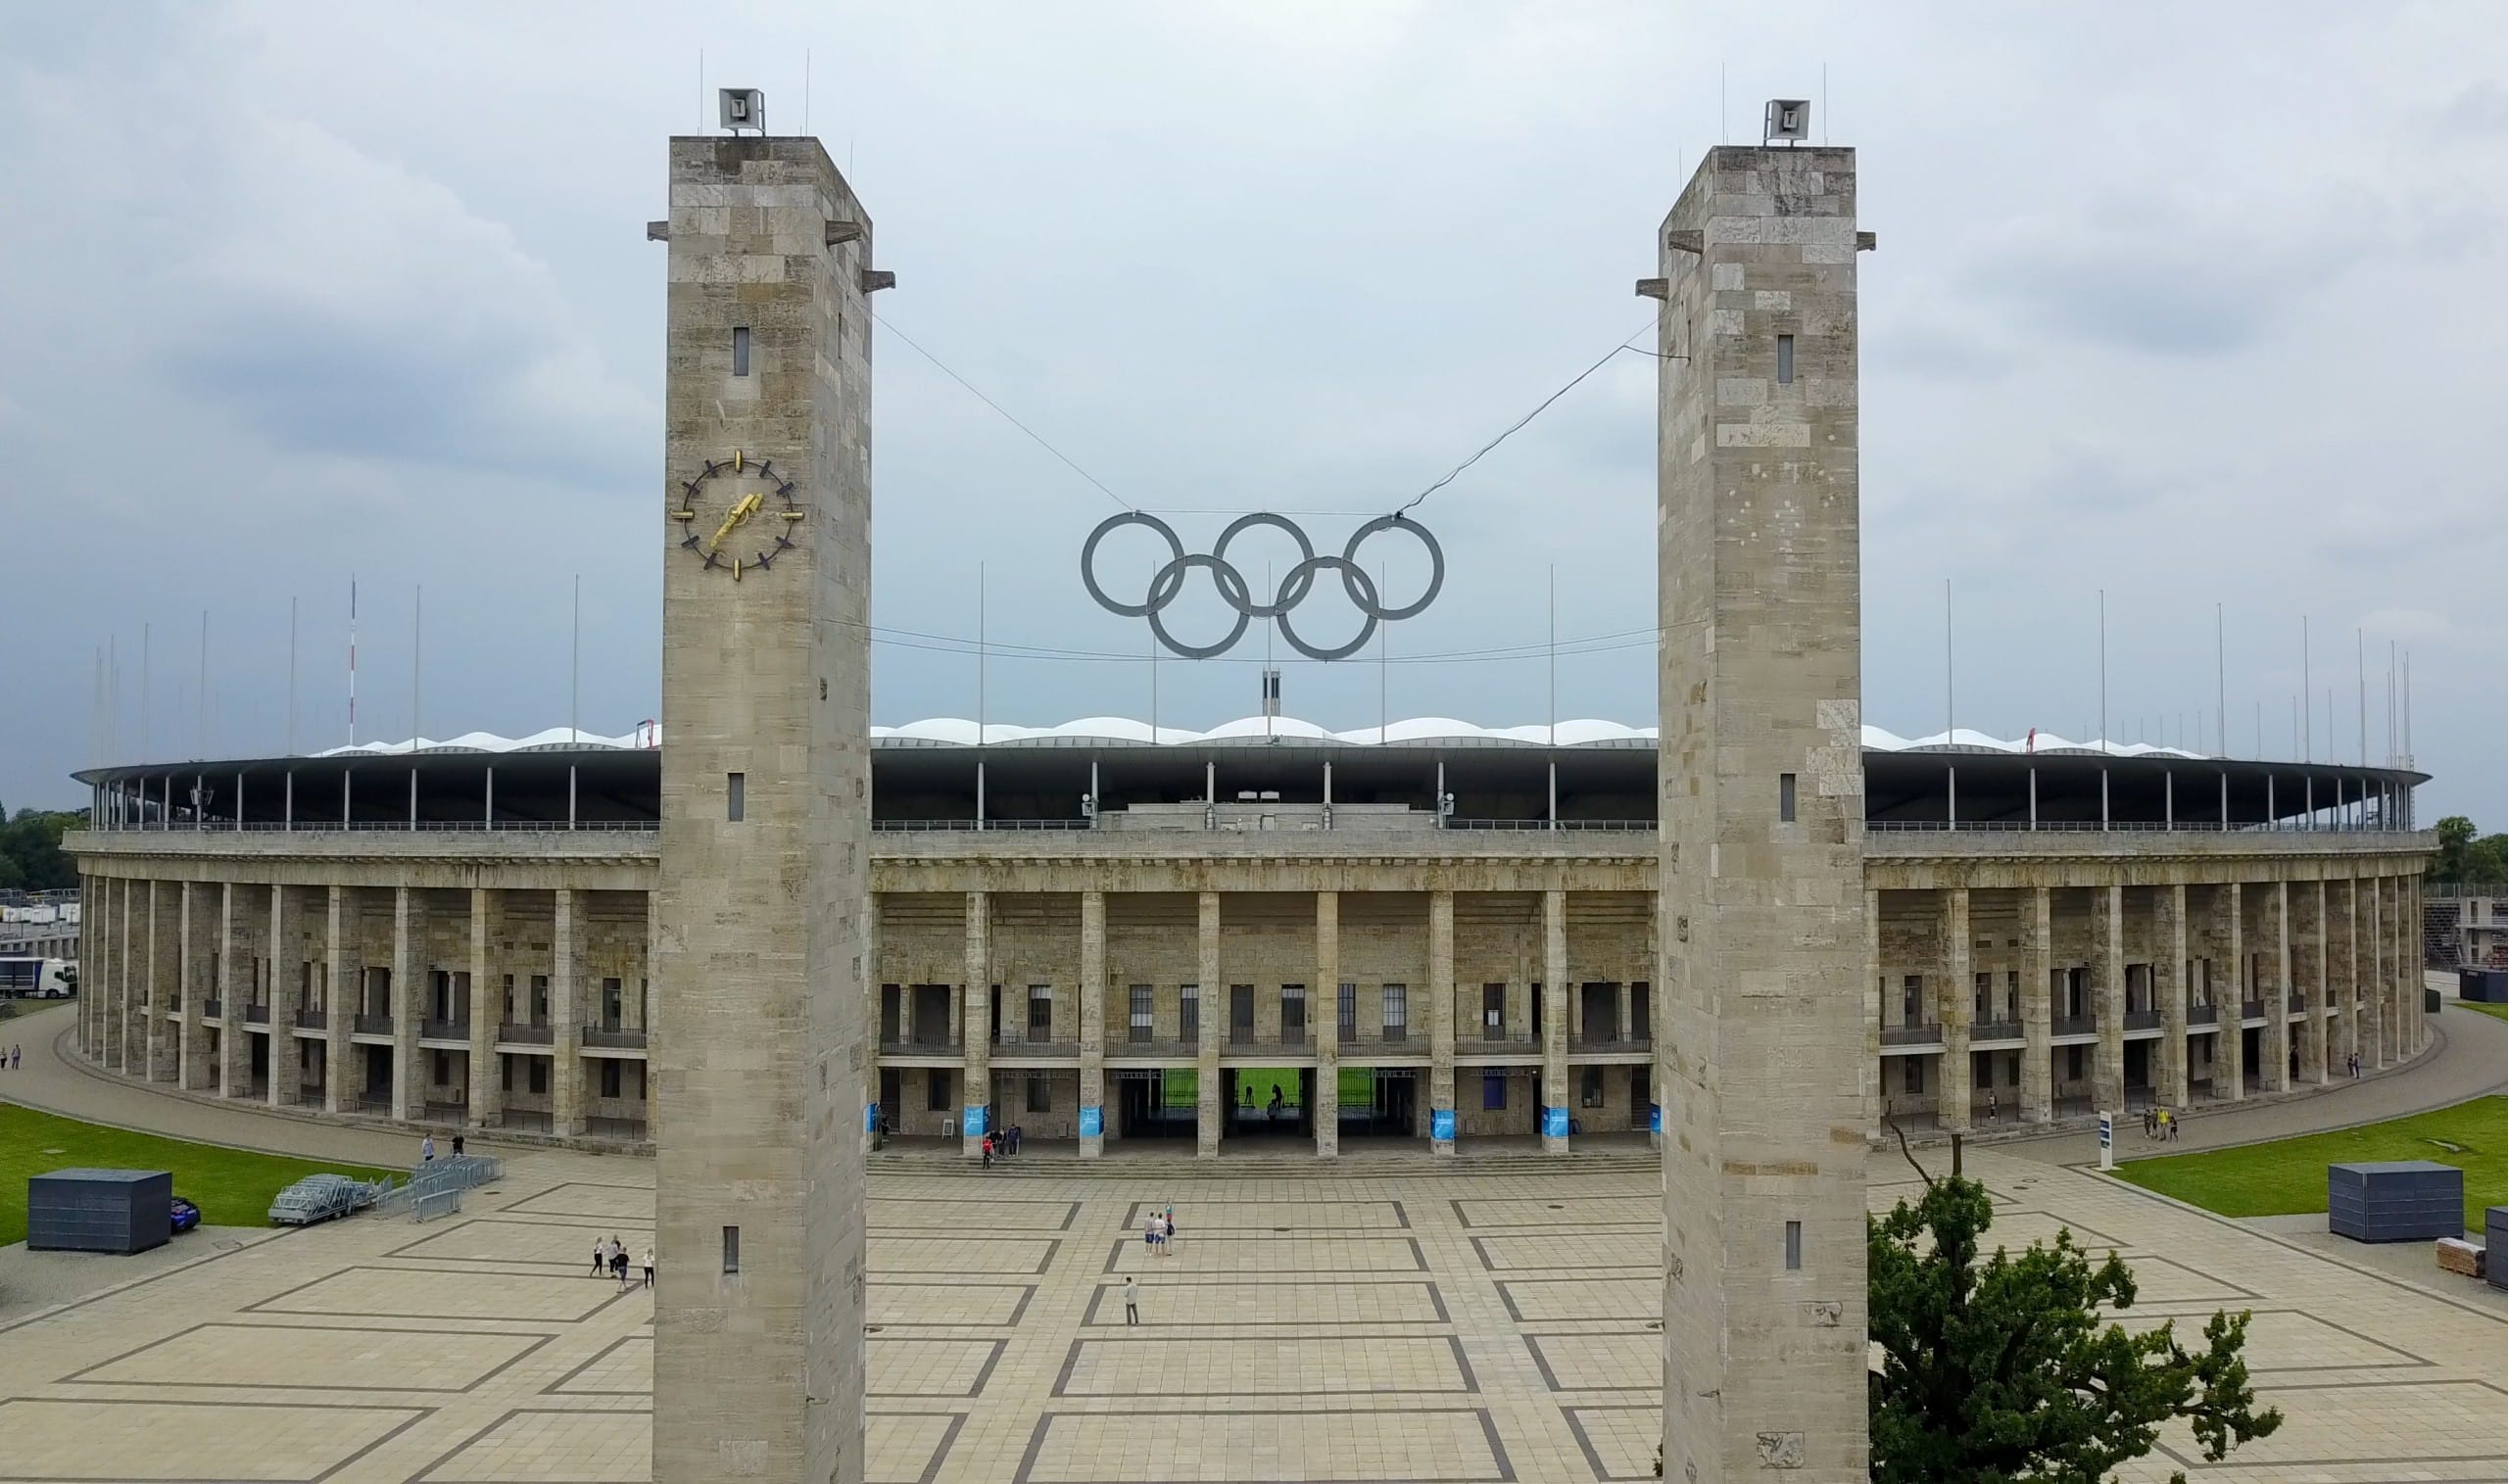 Der Haupteingang des Olympiastadions Berlin mit den Olympischen Ringen im Vordergrund. Bildquelle: KK nationsonline, CC BY-SA 4.0 , via Wikimedia Commons